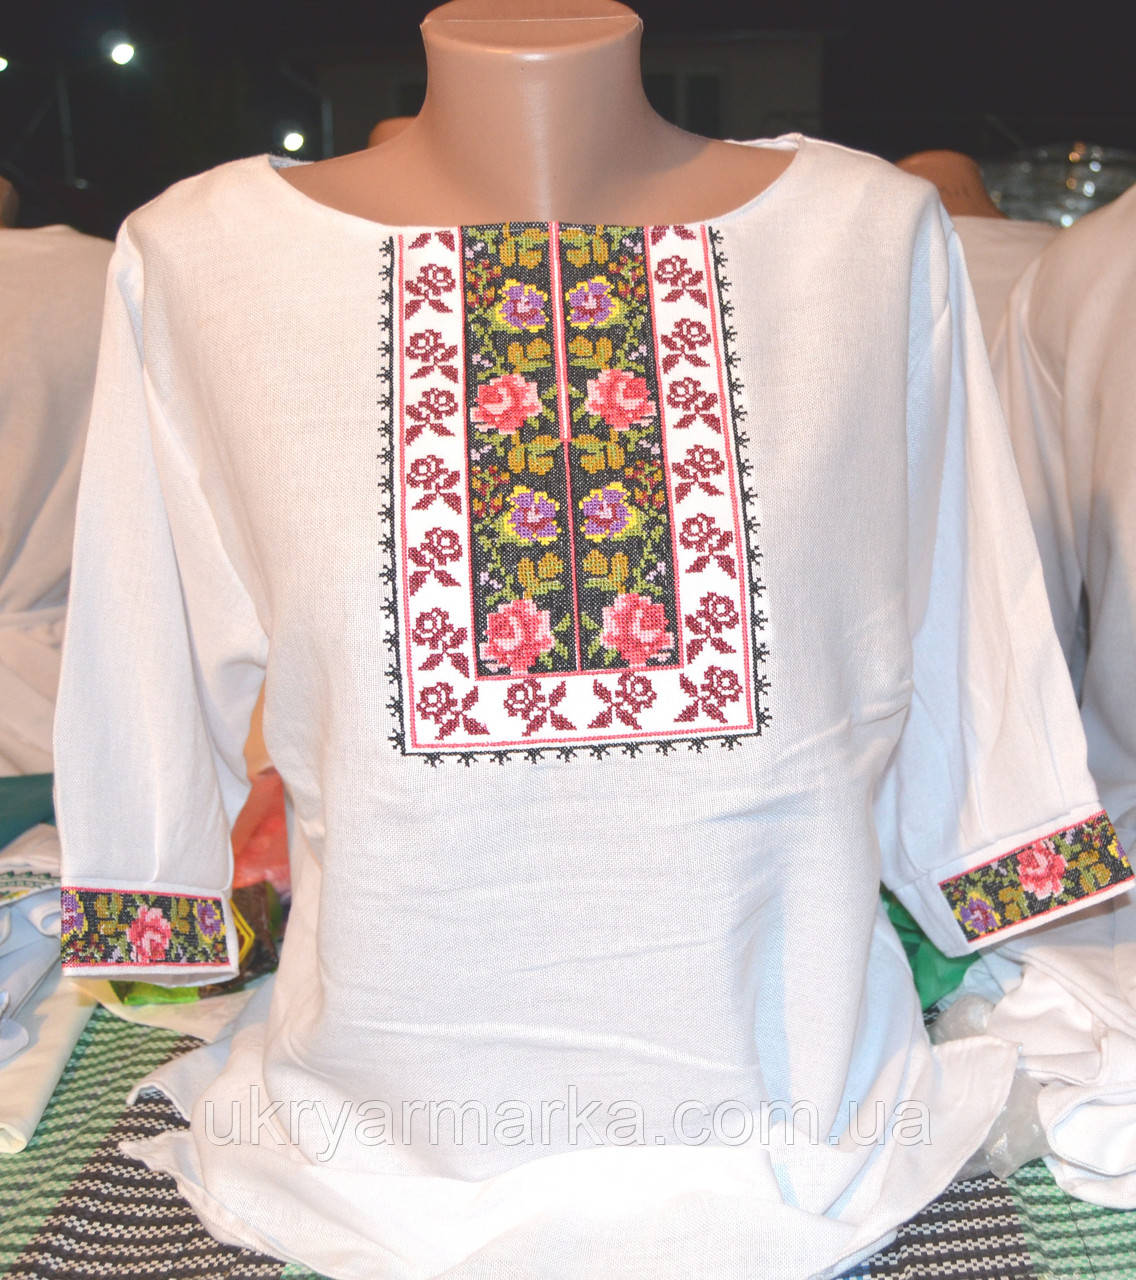 Жіноча вишита сорочка     "Для коханої", фото 1